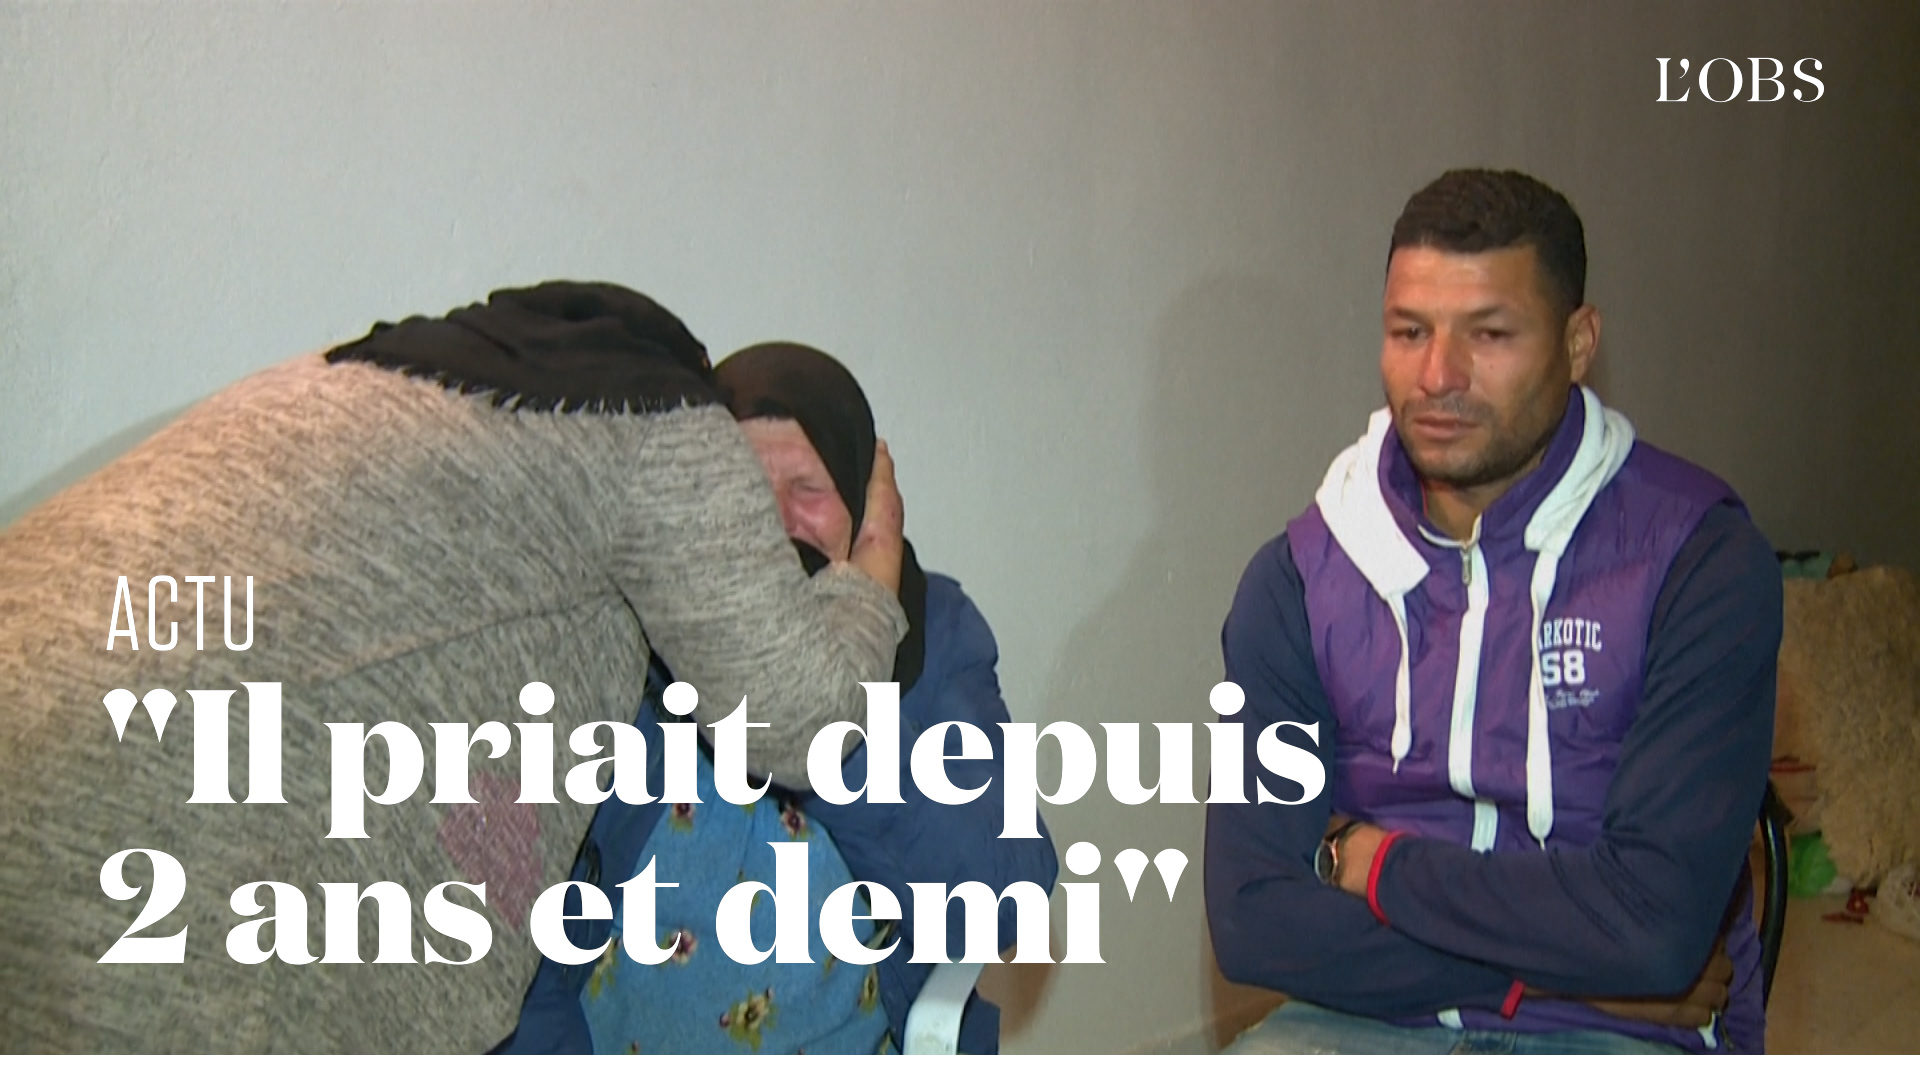 La famille tunisienne de l'assaillant présumé de l'attaque à Nice témoigne en vidéo